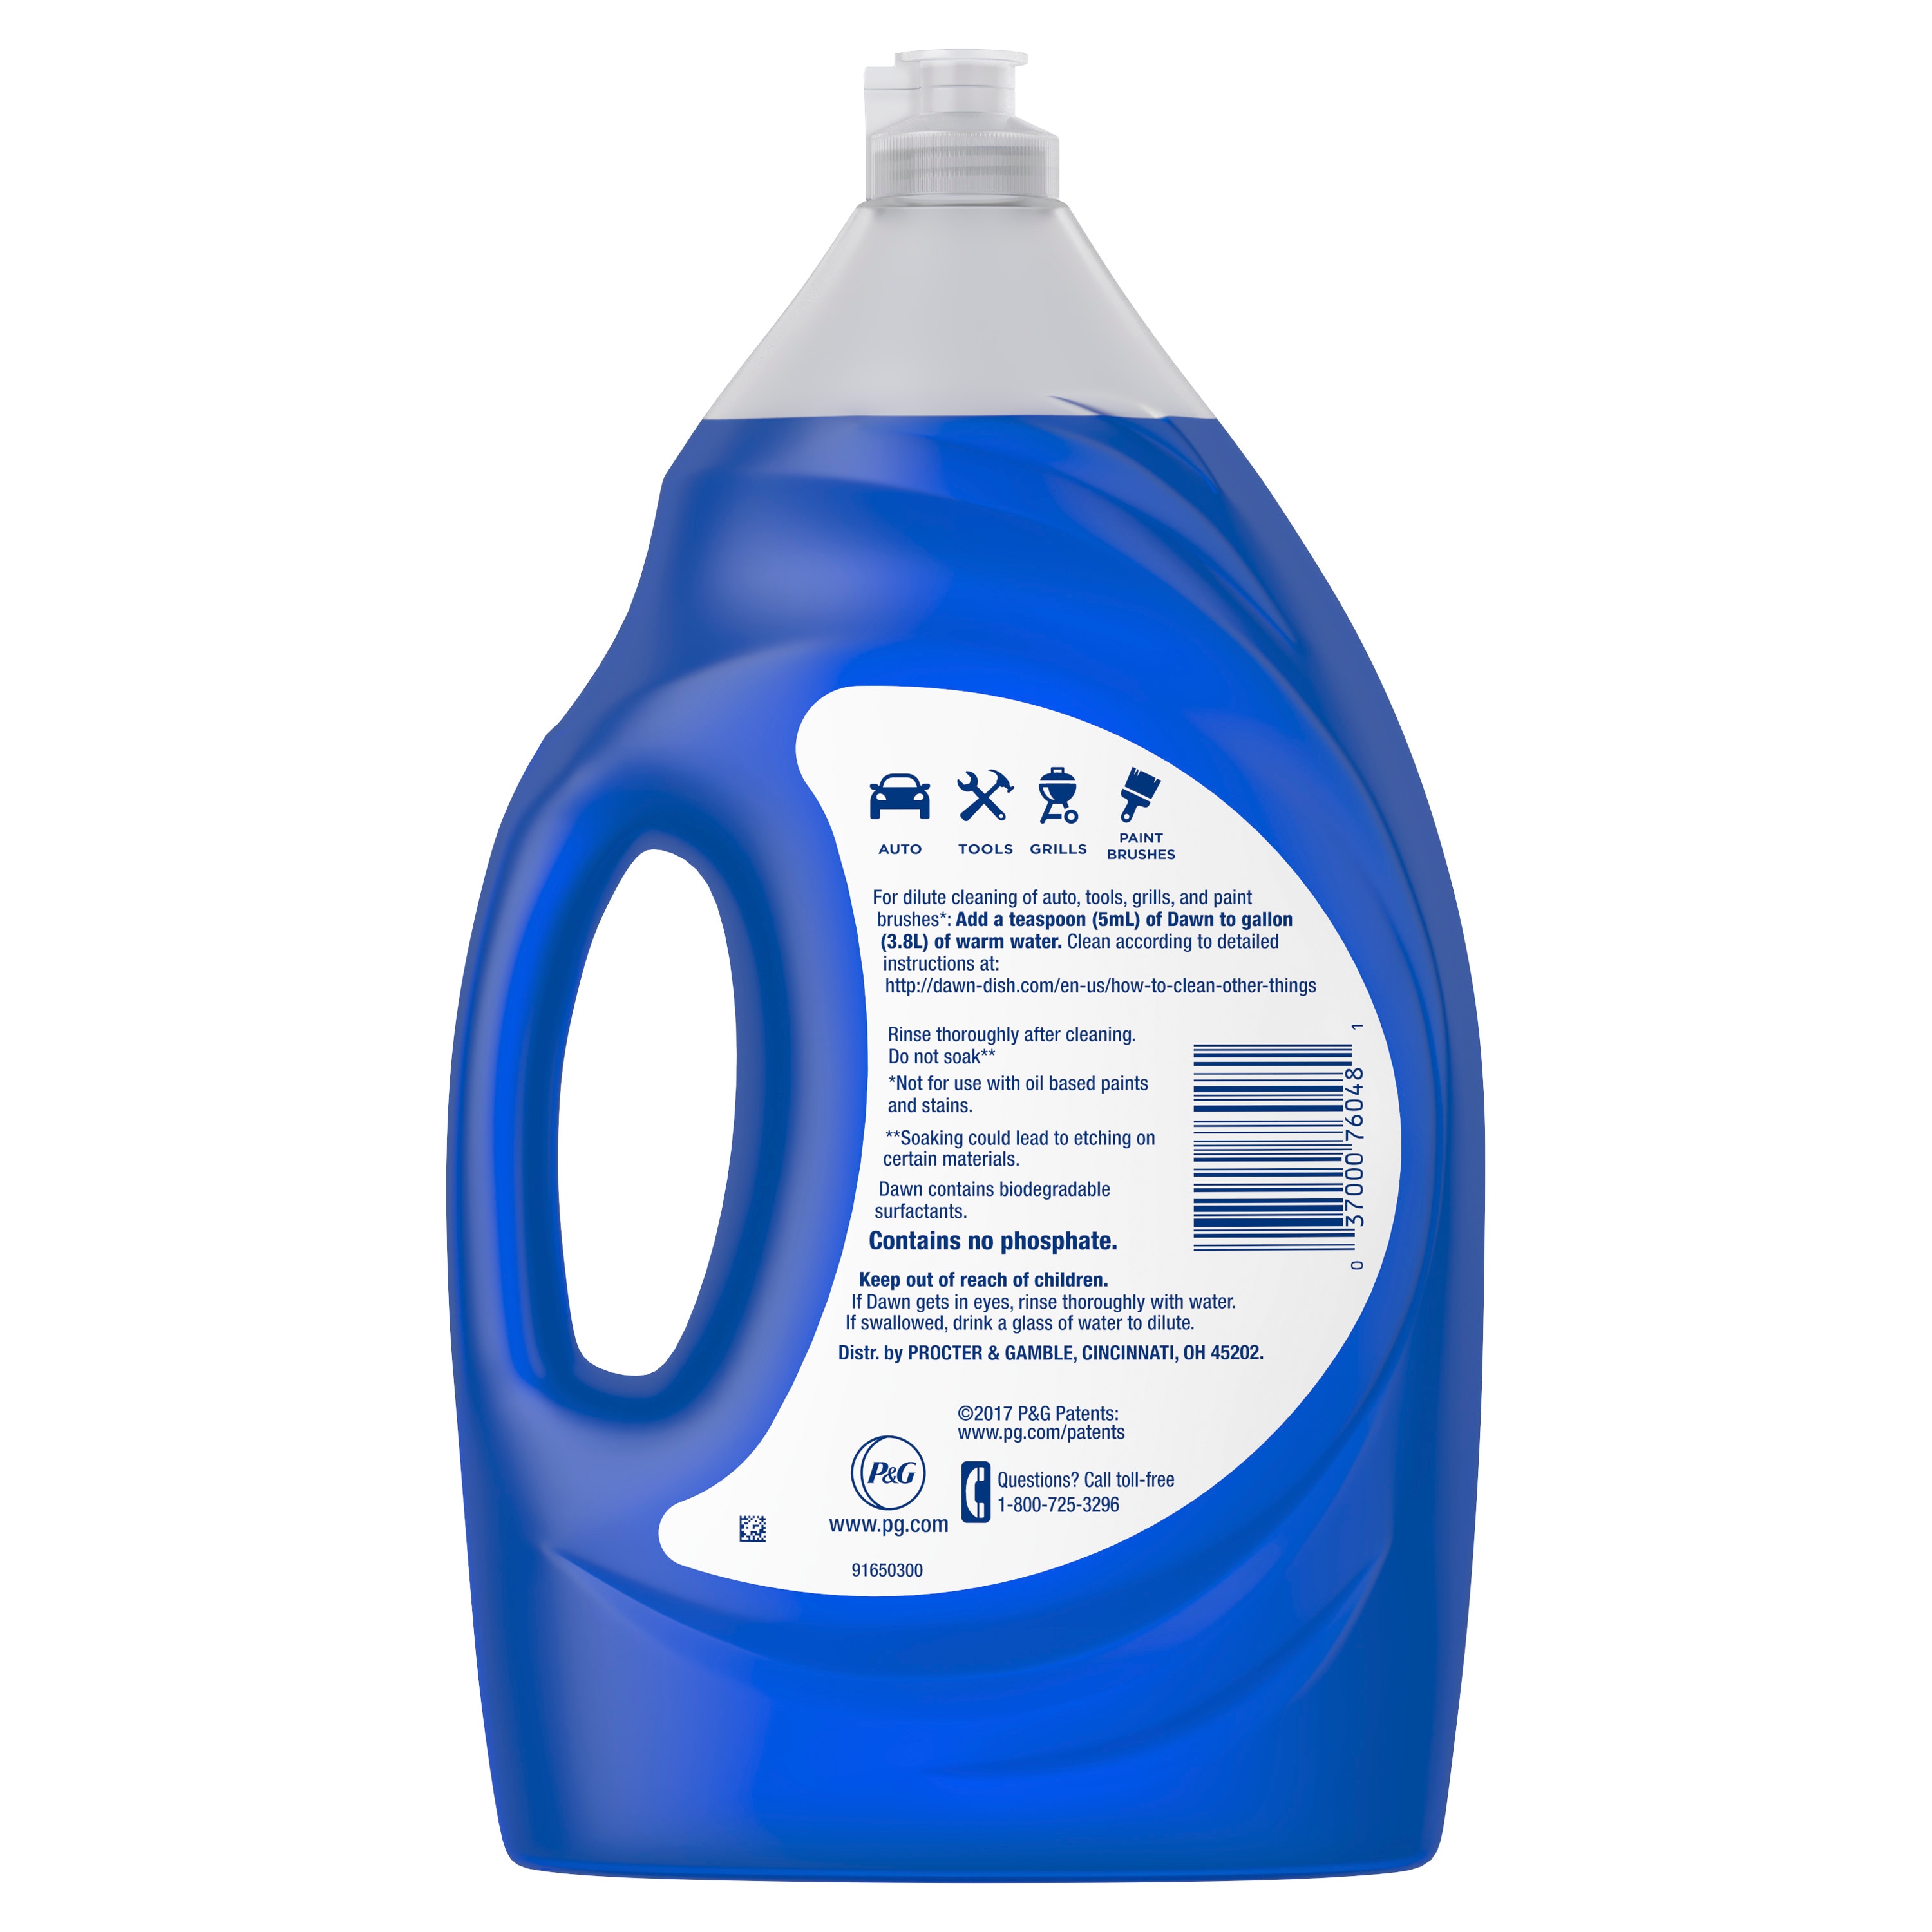 Blue Dawn Dish Liquid as Shampoo Review